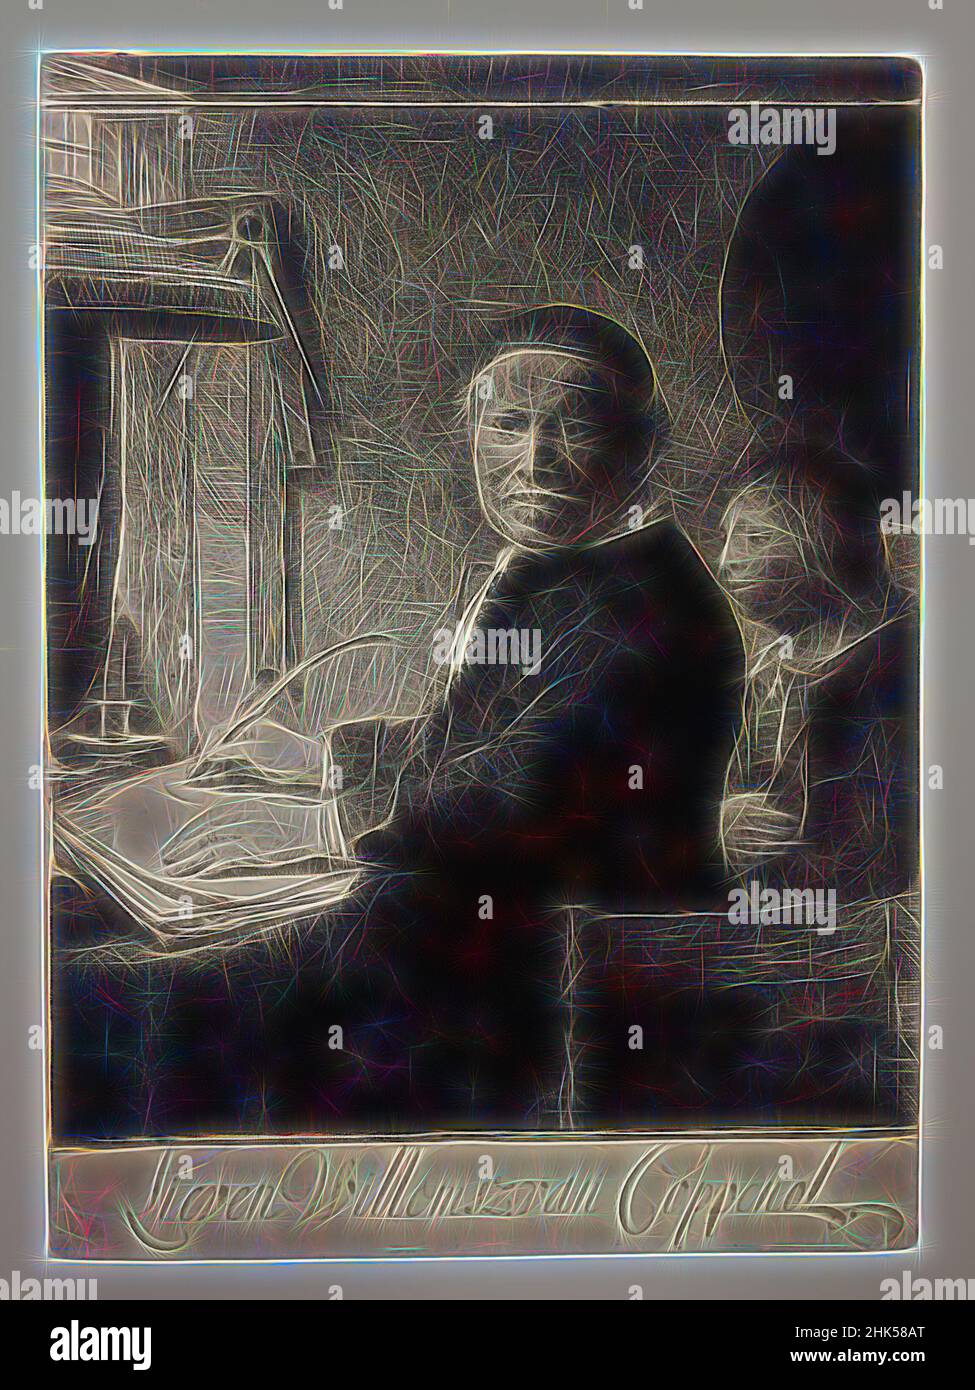 Inspiriert von Lieven Willemsz Van Coppenol, Schreibmeister, Rembrandt Harmensz. Van Rijn, Niederländisch, 1606-1669, Radierung, Trockenpunkt, Und Burin auf Papier, Niederlande, ca. 1658, Platte: 10 1/4 x 7 1/2 Zoll, 26 x 19,1 cm, neu gestaltet von Artotop. Klassische Kunst neu erfunden mit einem modernen Twist. Design von warmen fröhlichen Leuchten der Helligkeit und Lichtstrahl Strahlkraft. Fotografie inspiriert von Surrealismus und Futurismus, umarmt dynamische Energie der modernen Technologie, Bewegung, Geschwindigkeit und Kultur zu revolutionieren Stockfoto